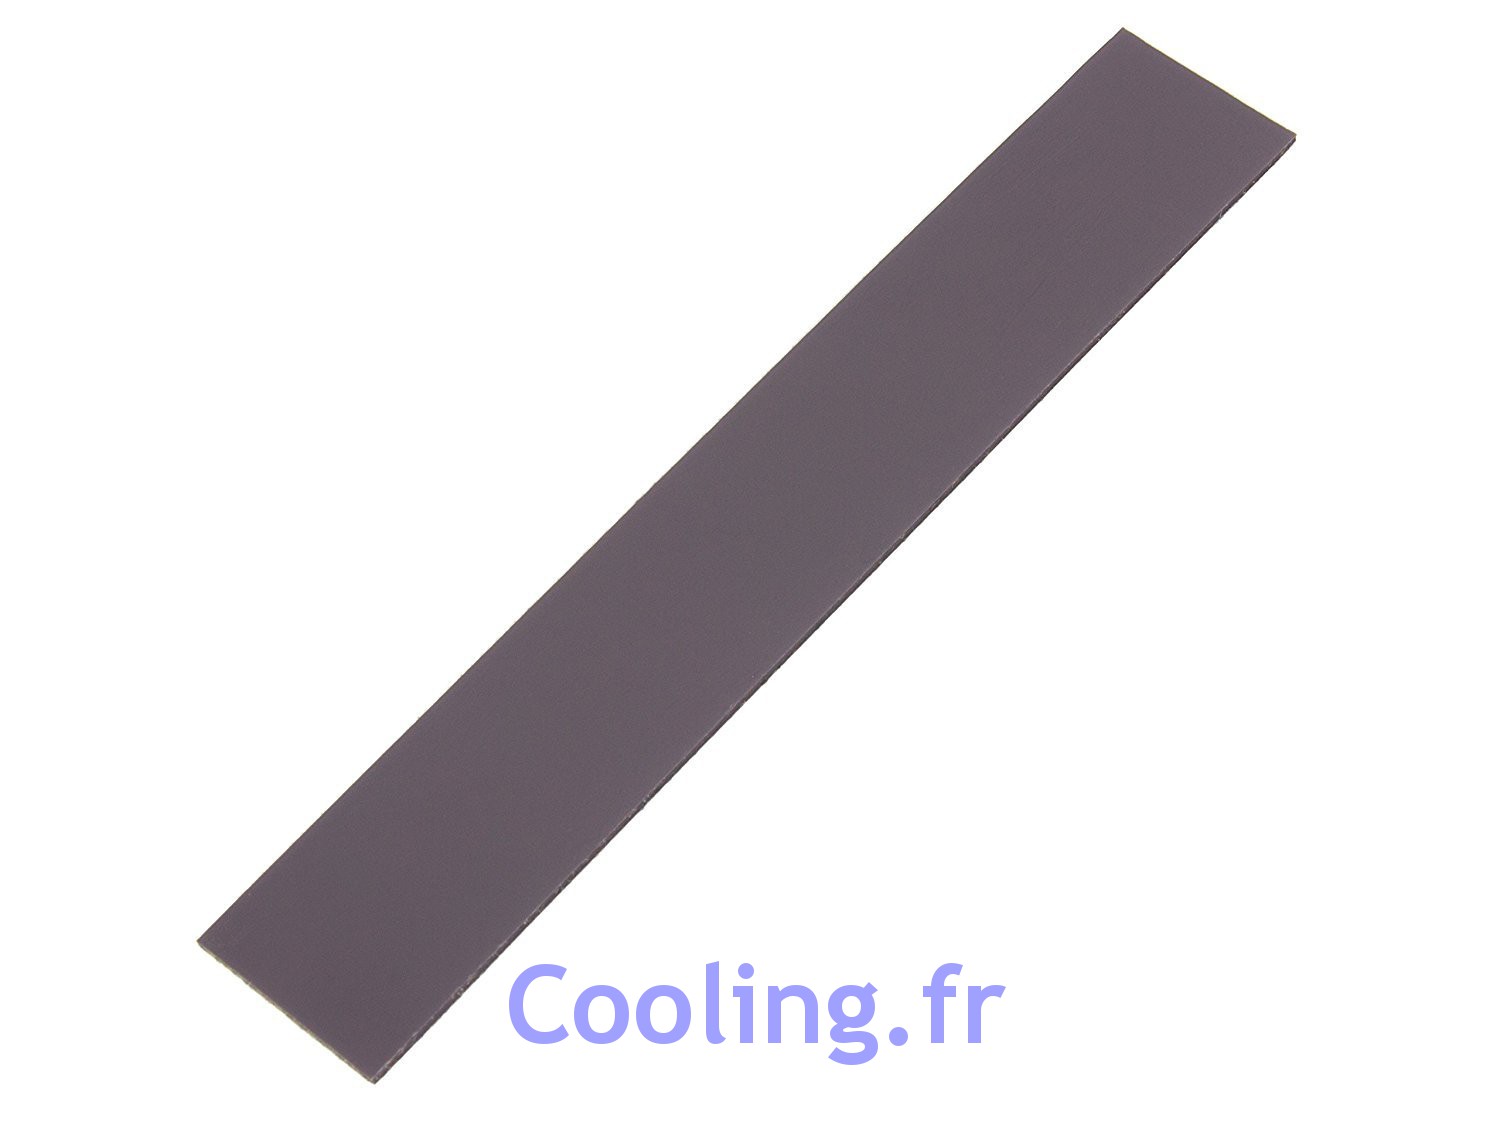 Cooling.fr